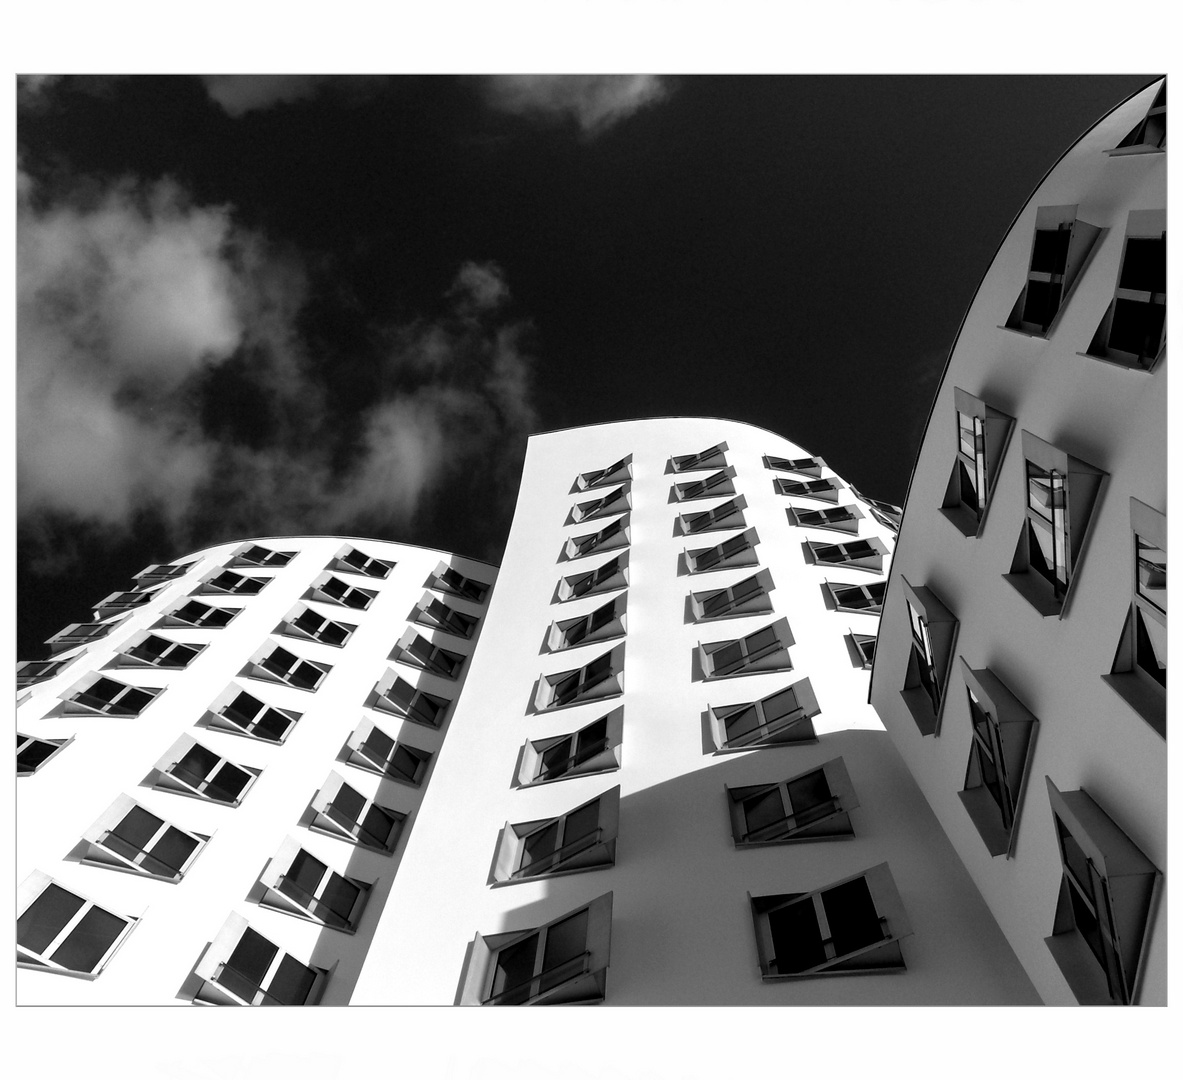 Let's Dance - "Das weiße Haus" von Gehry